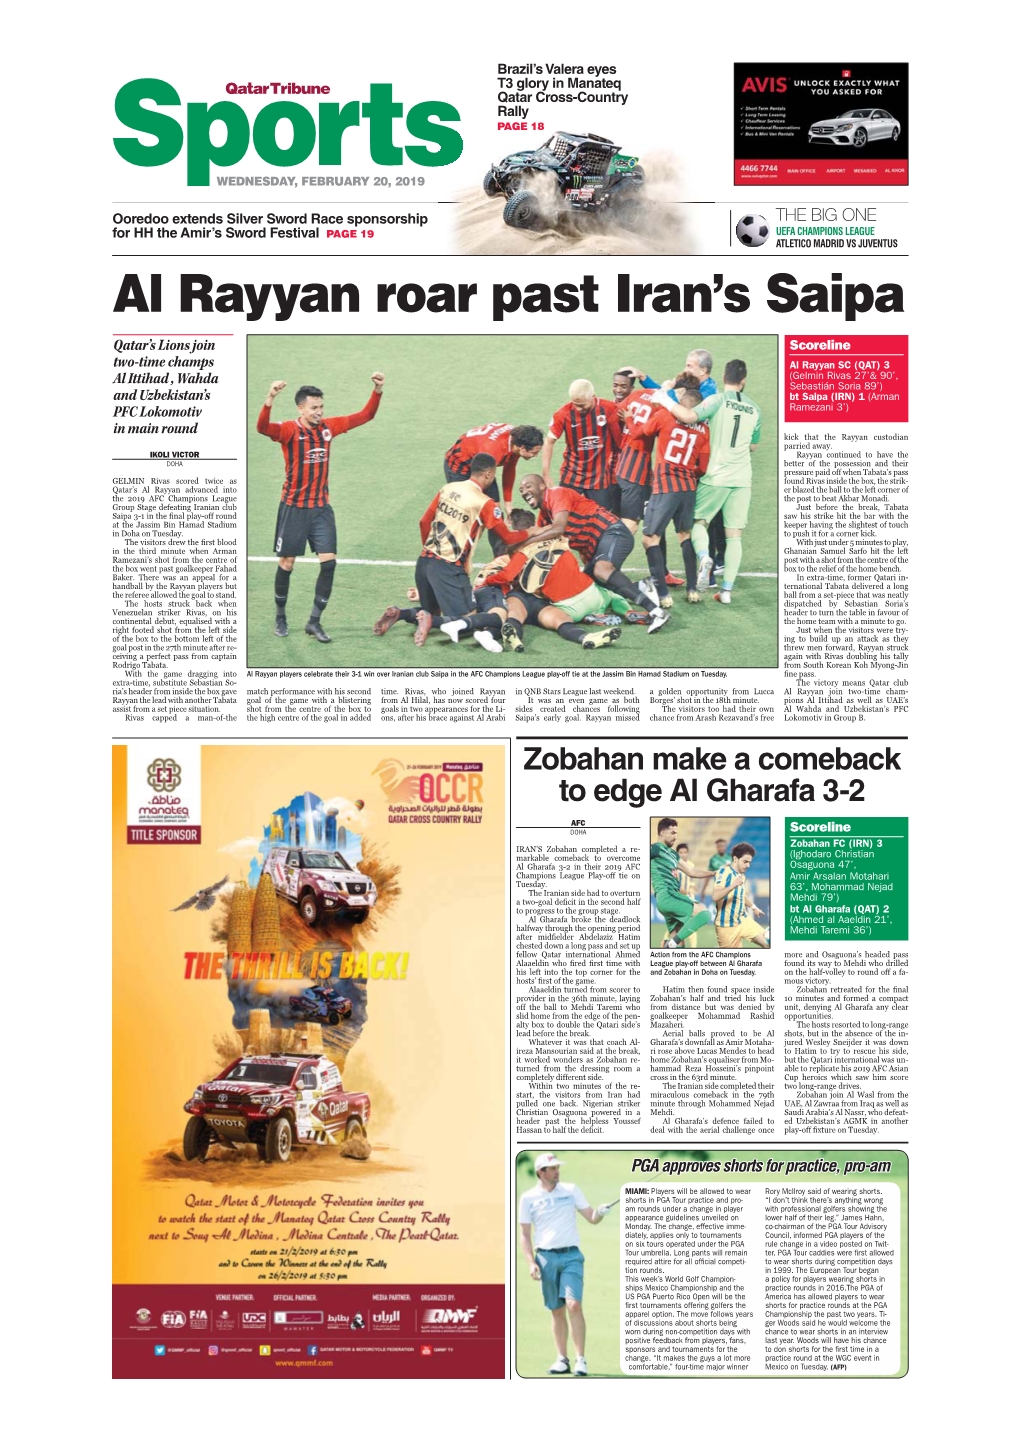 Al Rayyan Roar Past Iran's Saipa